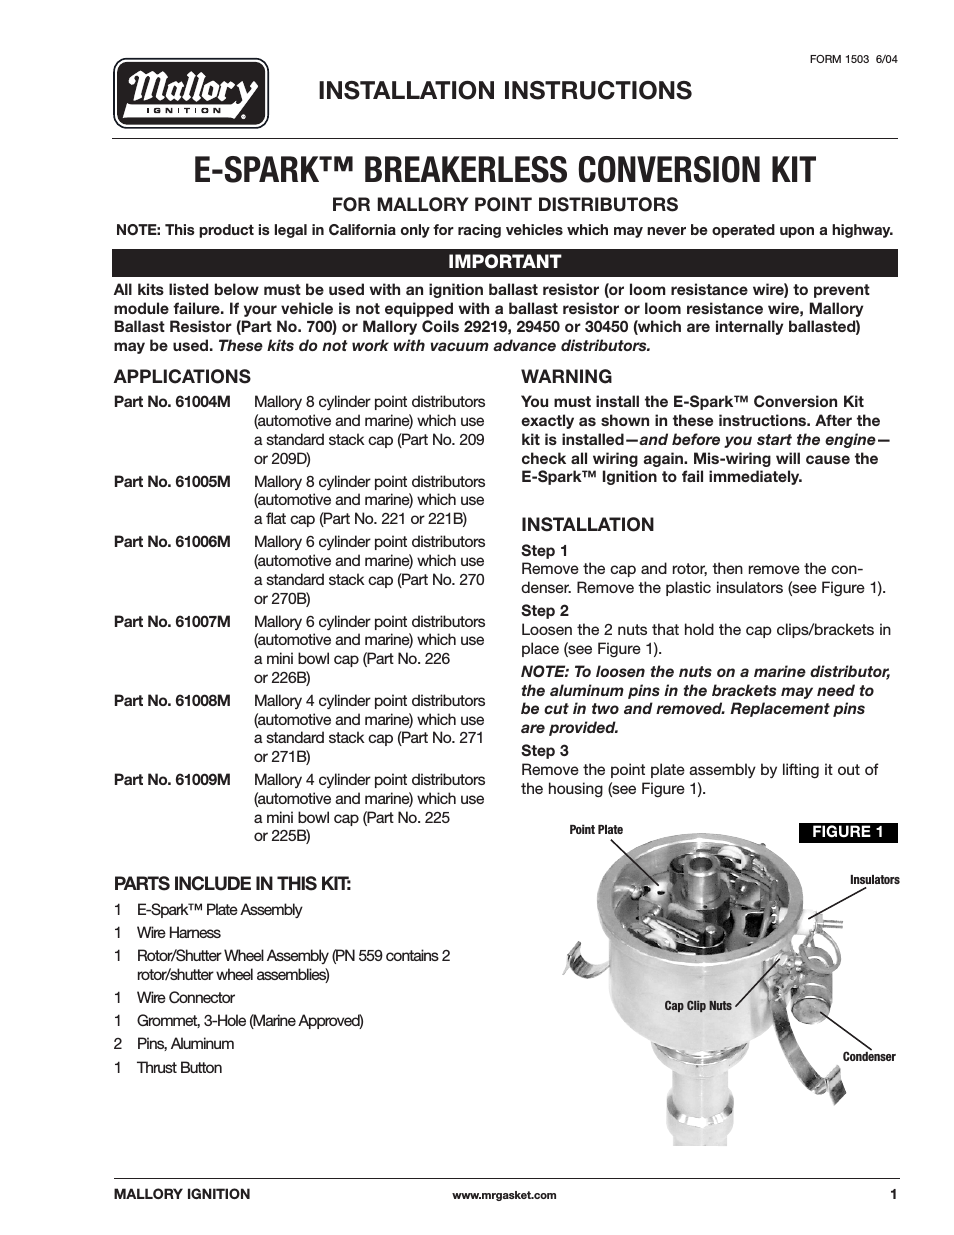 Mallory E-SPARK BREAKERLESS CONVERSION KIT 61004M_61005M